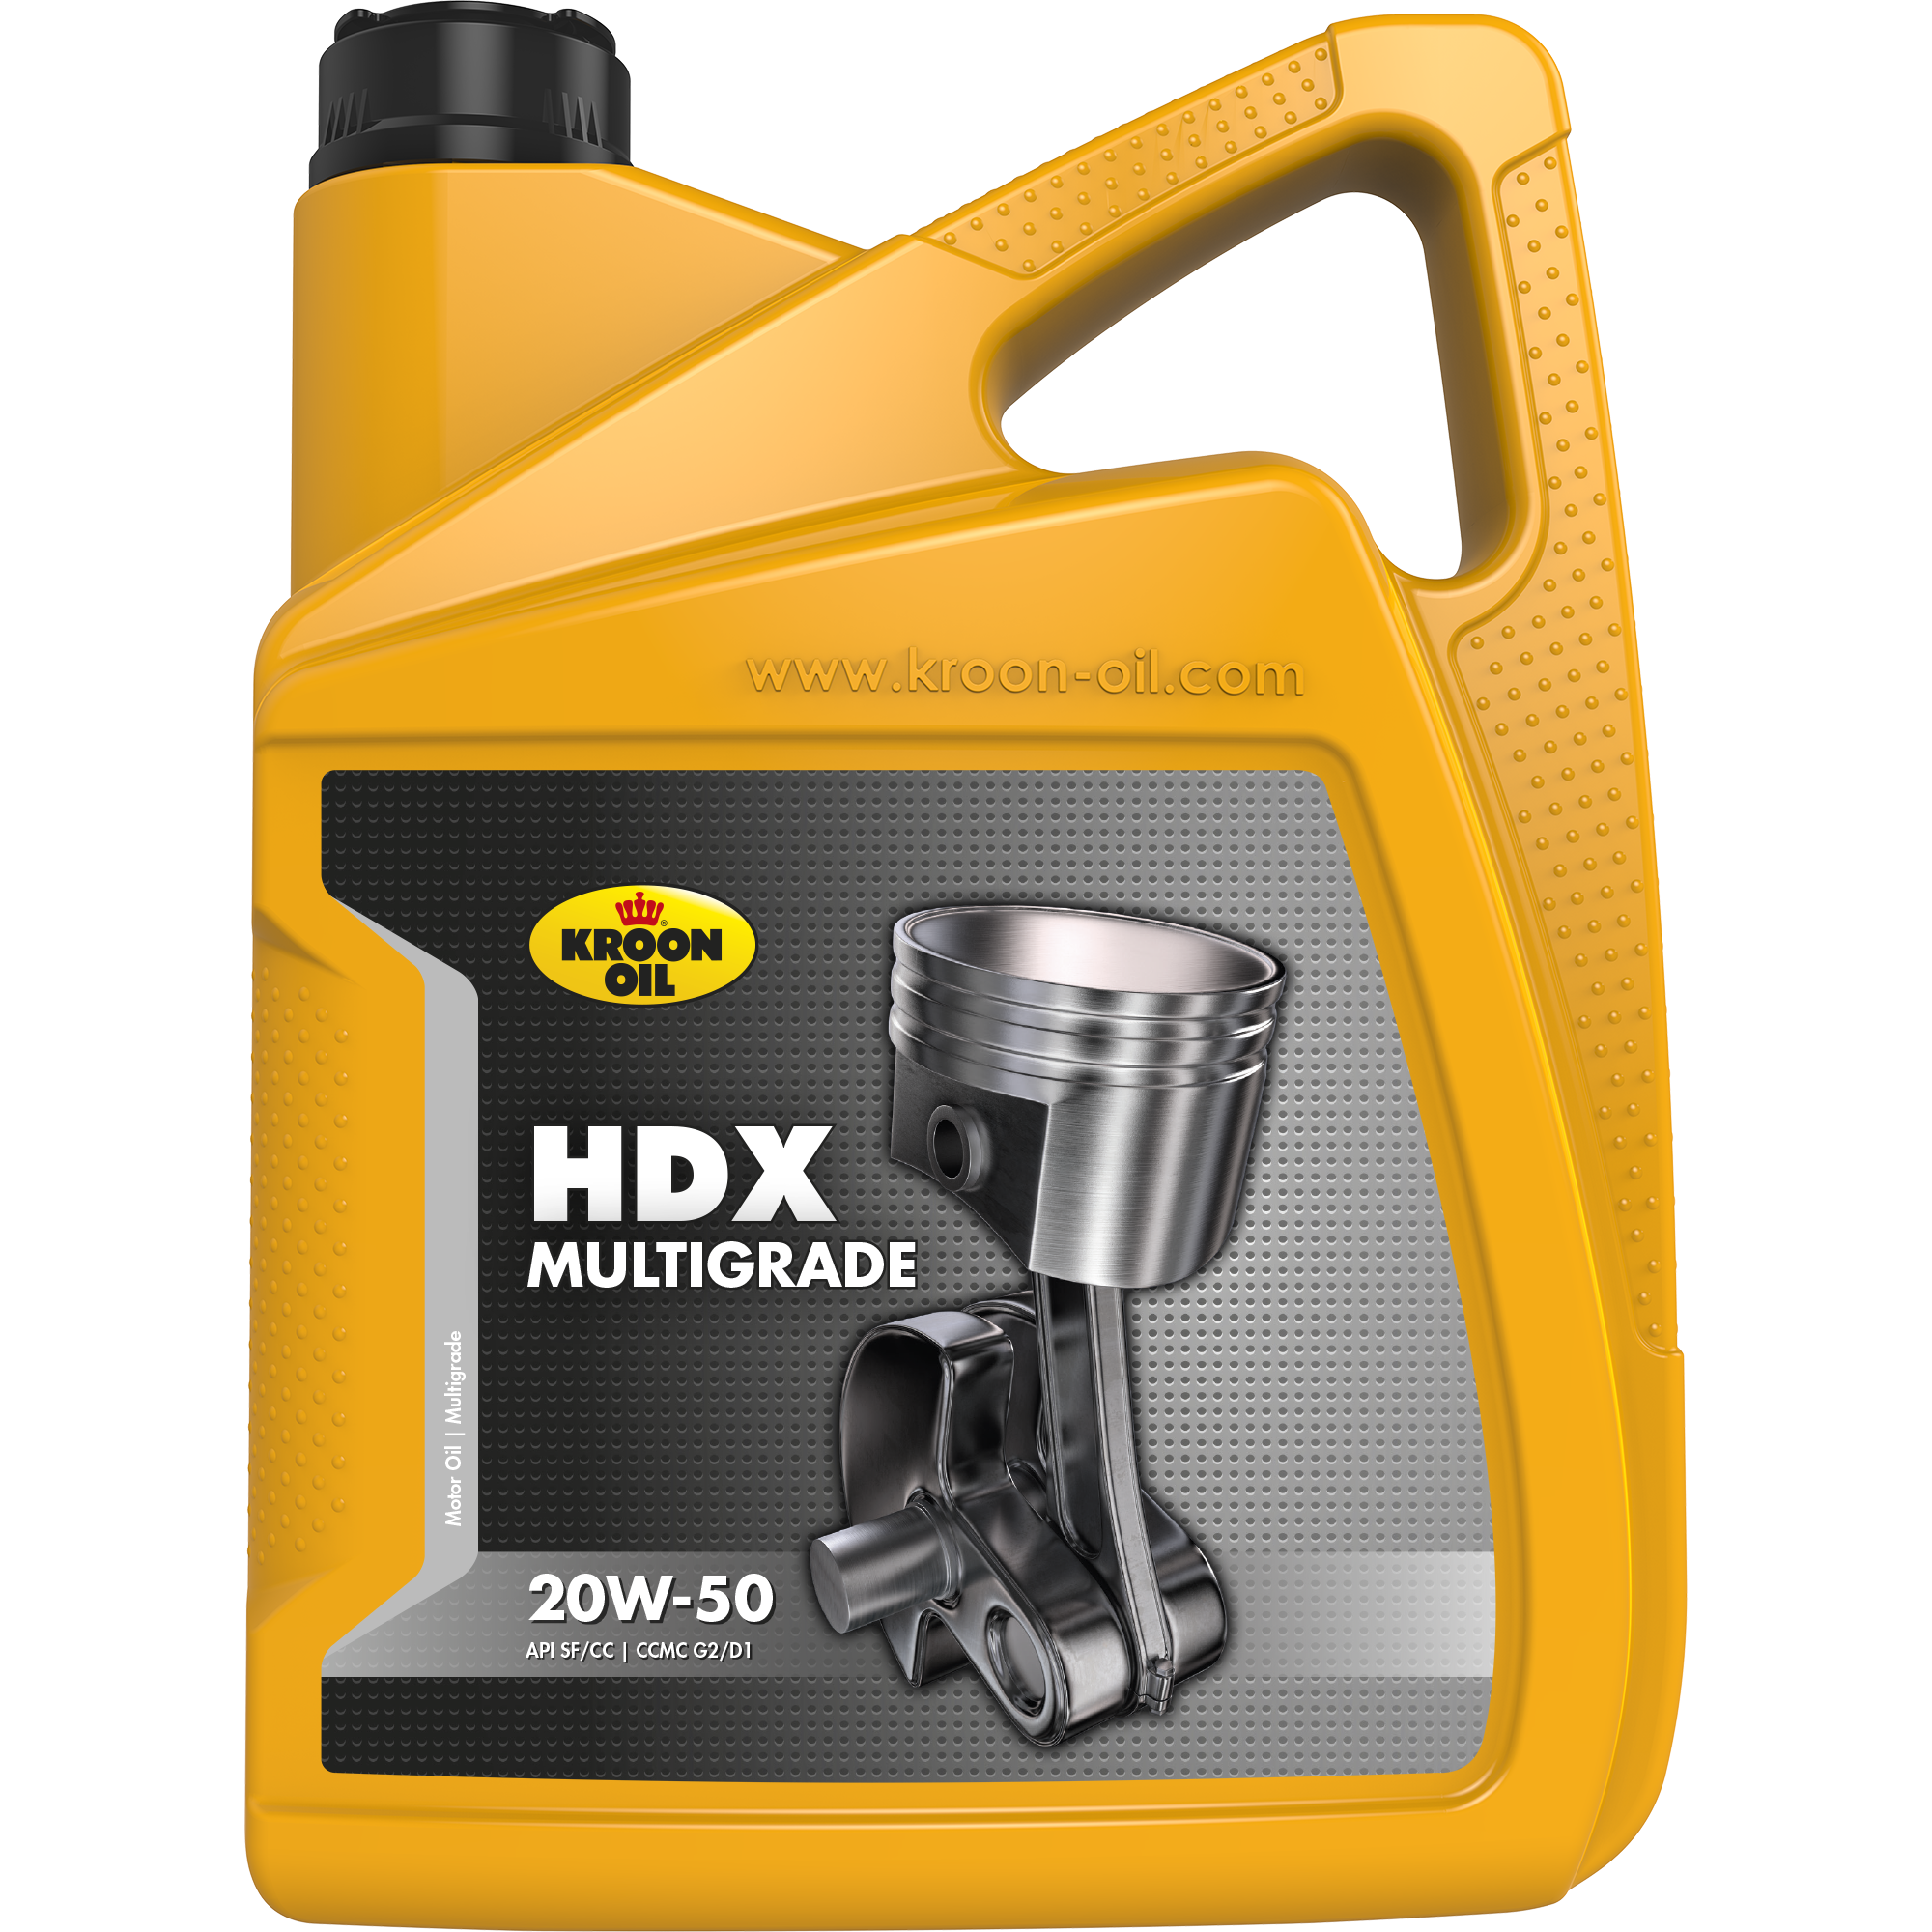 00327-5 HDX 20W-50 is een motorolie gebaseerd op hoogwaardige solvent geraffineerde basisoliën.